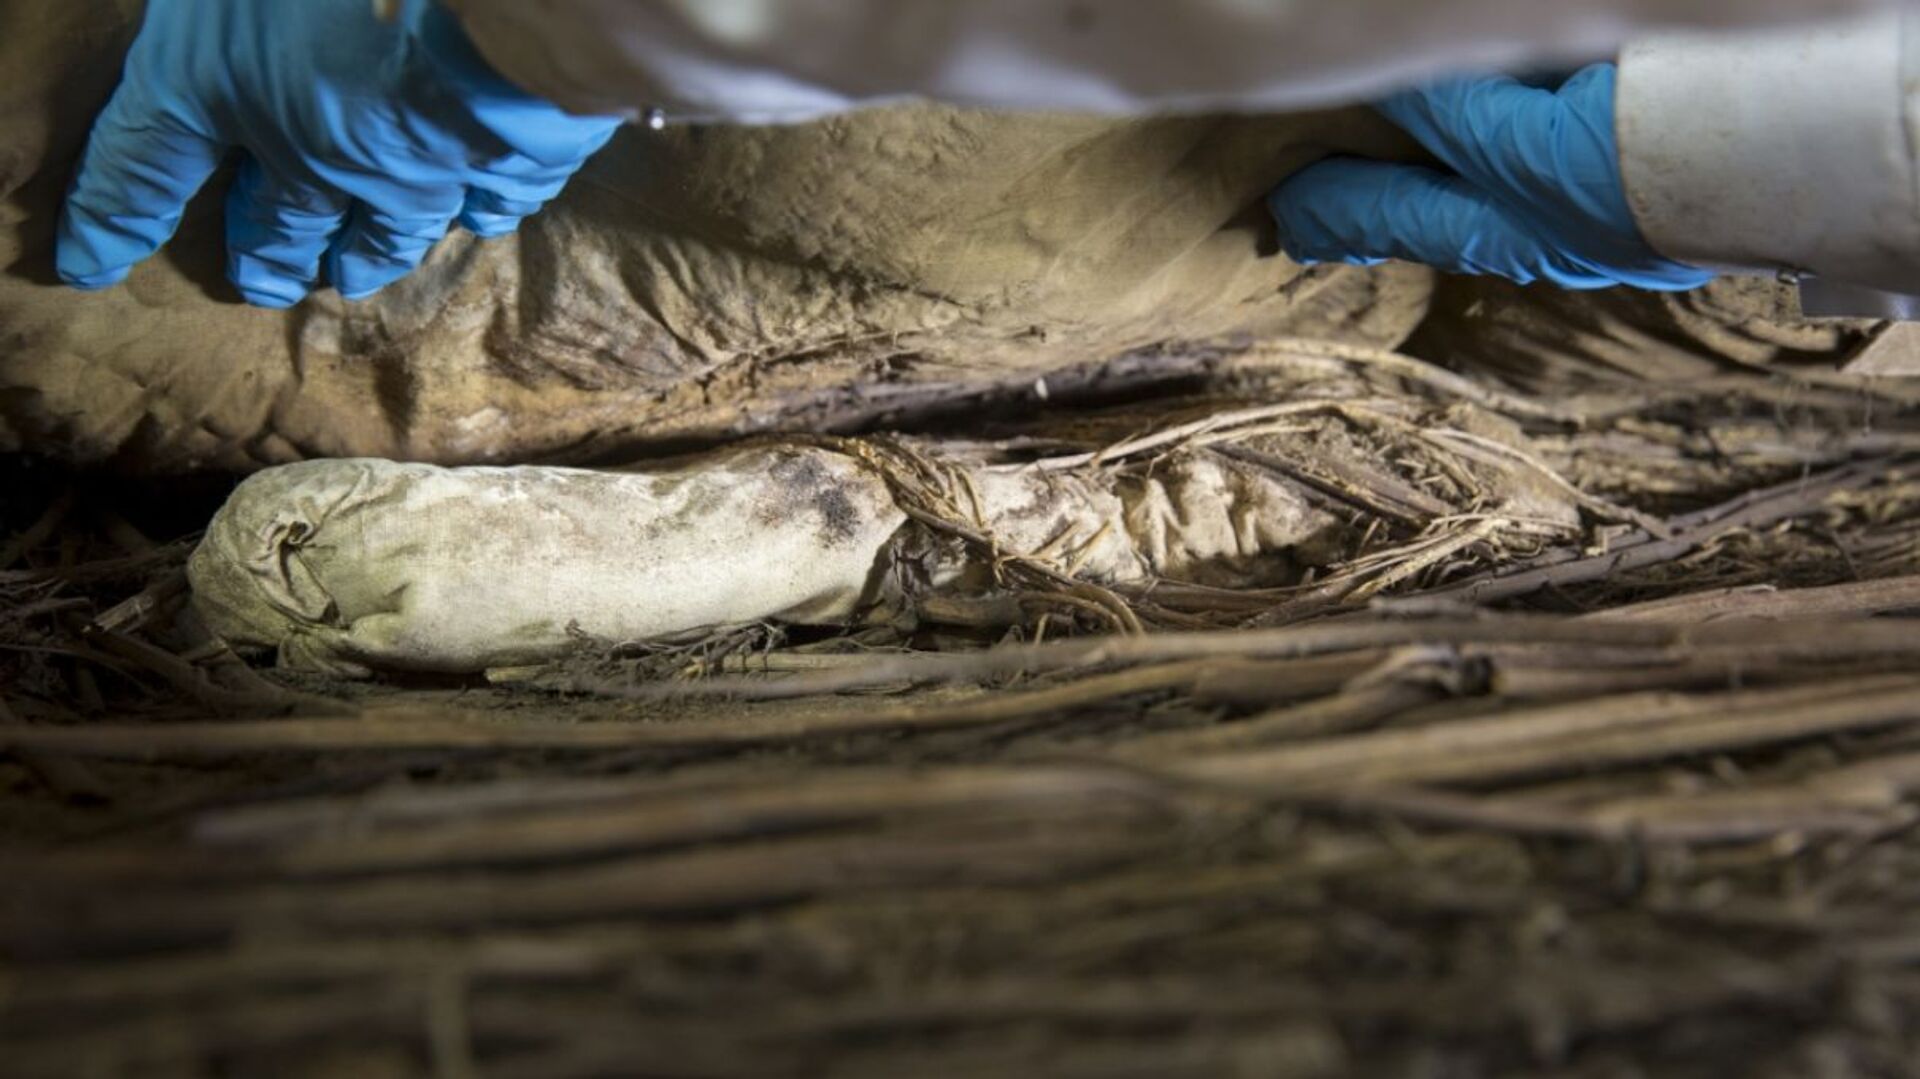 Levou para cova? DNA revela parentesco entre bispo sueco do século XVII e feto em seu caixão (FOTOS) - Sputnik Brasil, 1920, 08.04.2021